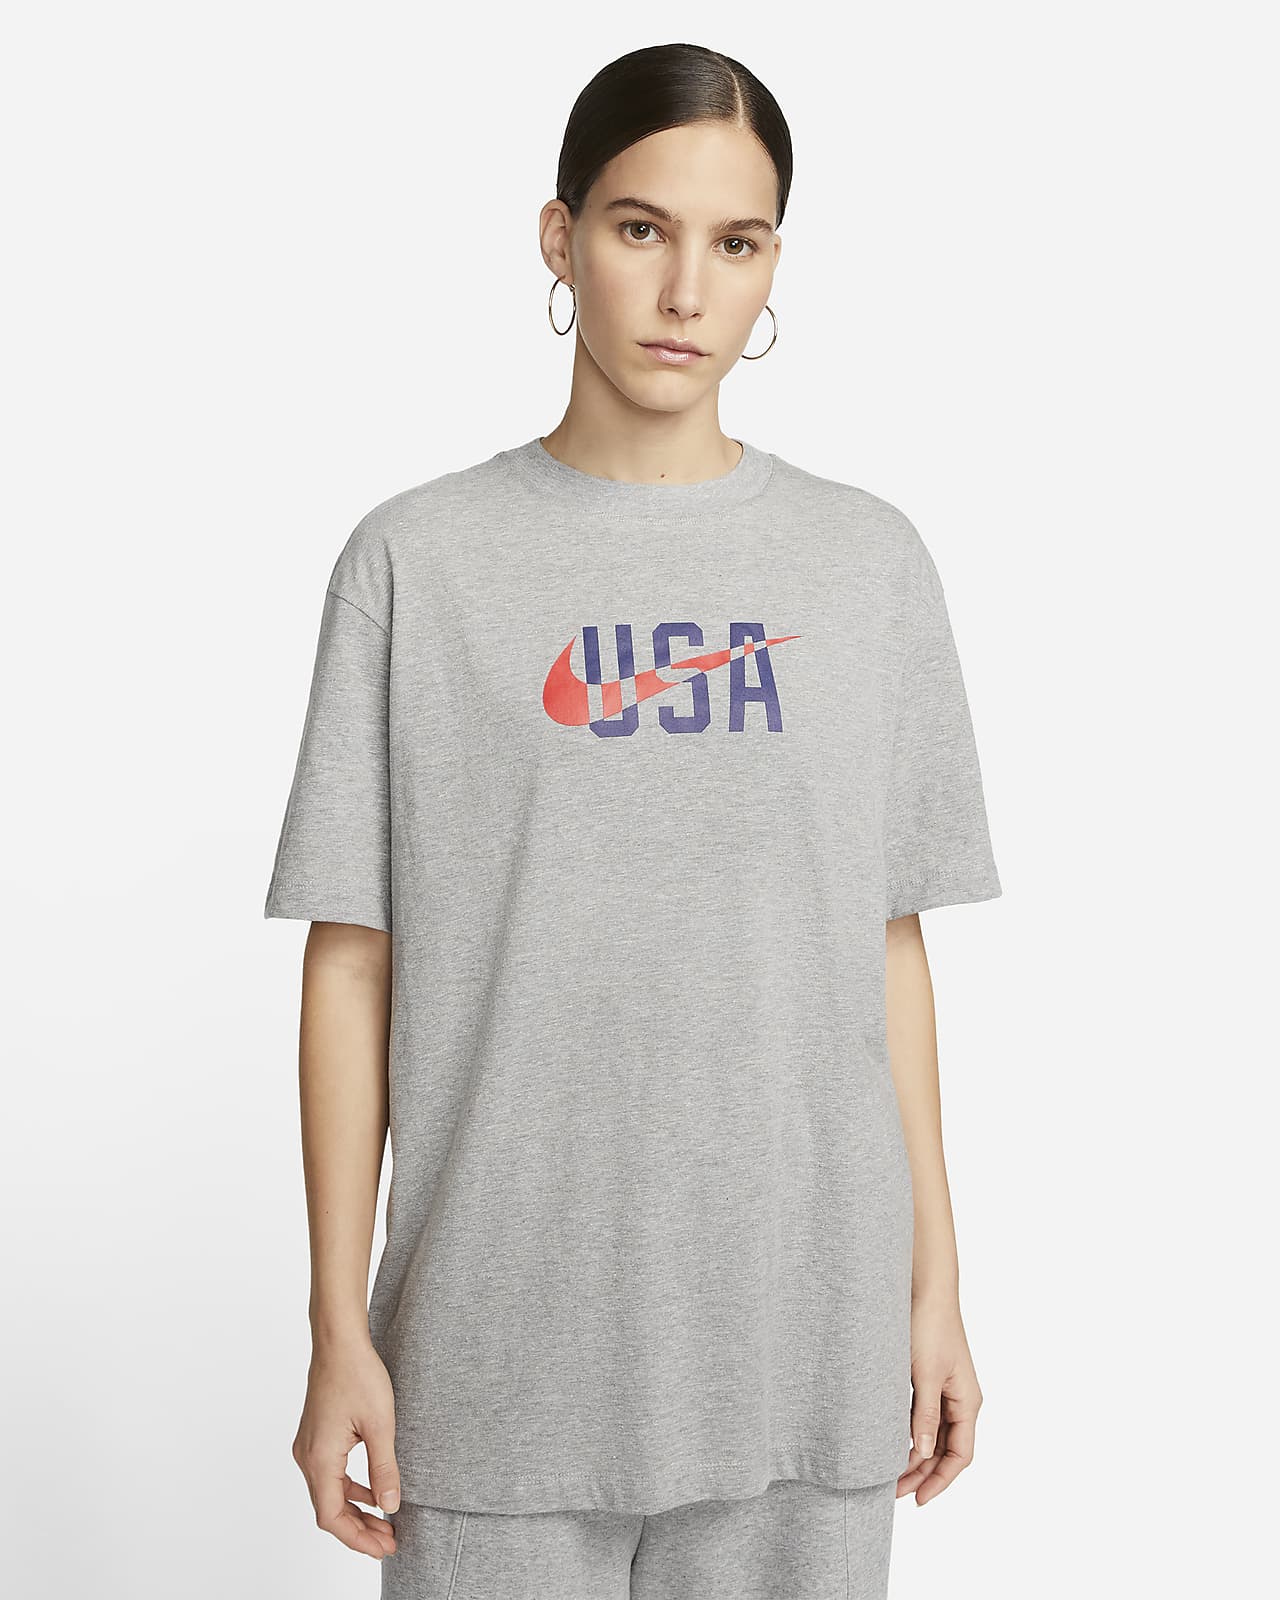 Detektiv fra nu af Forekomme U.S. Swoosh Women's Nike T-Shirt. Nike.com